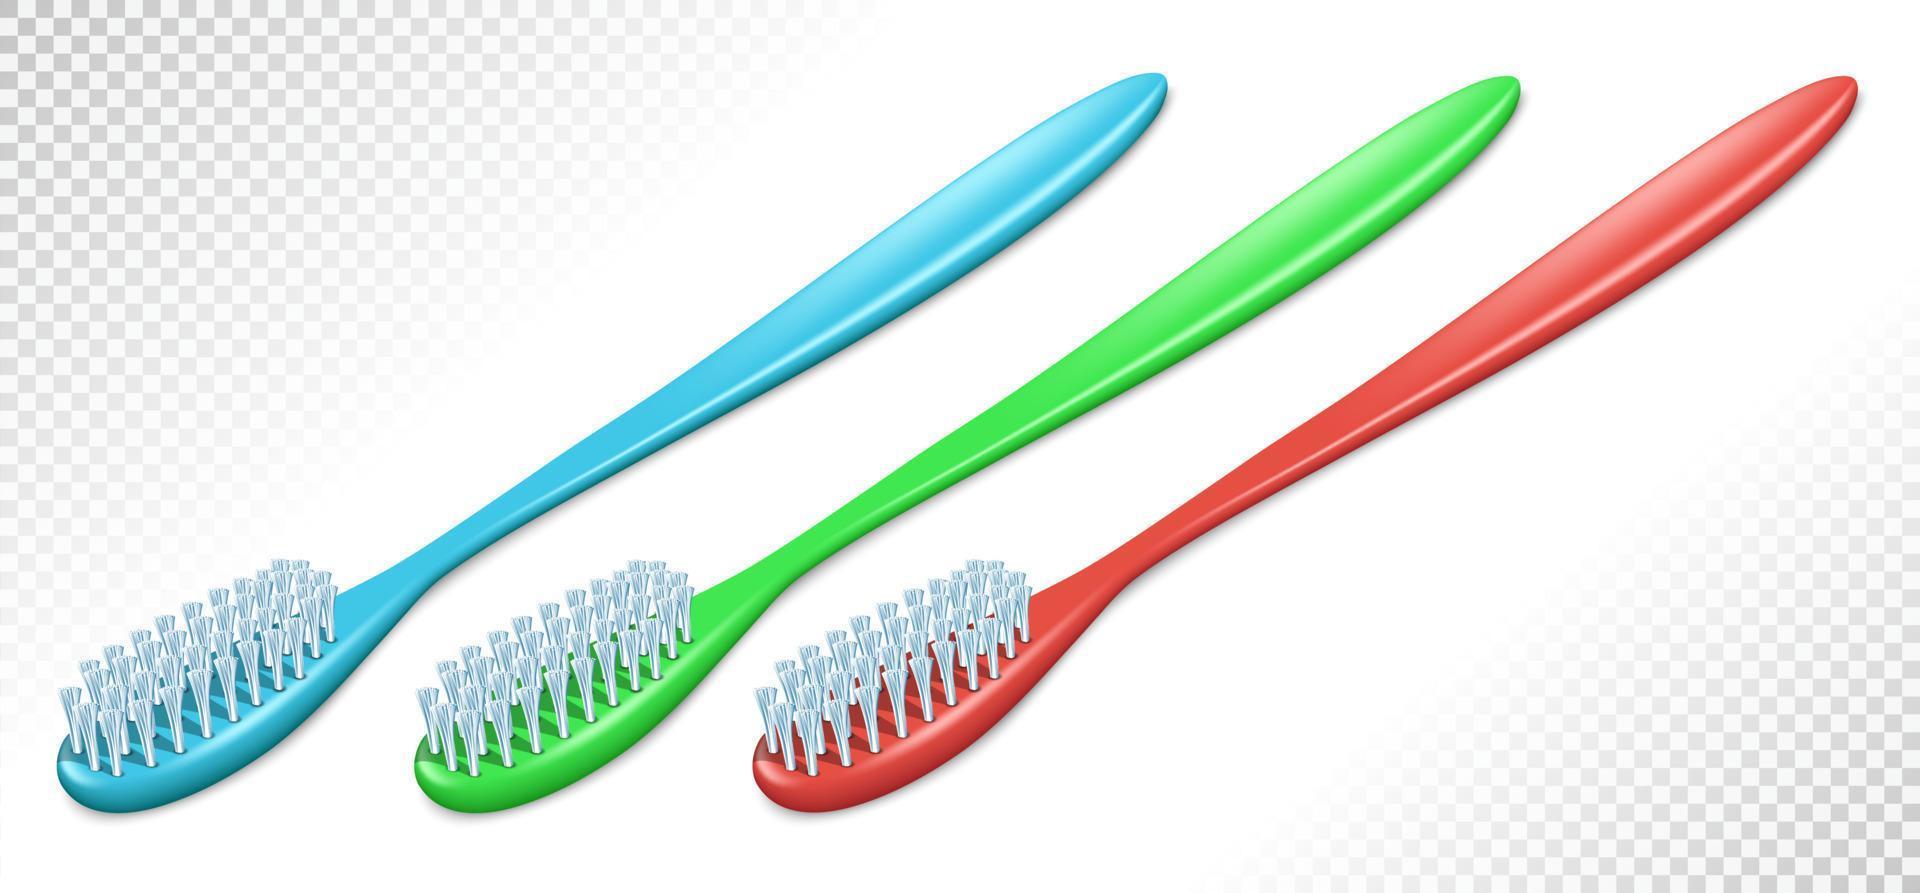 escovas de dentes de plástico de cores diferentes. ver em perspectiva. isolado em fundo transparente. ilustração vetorial. vetor